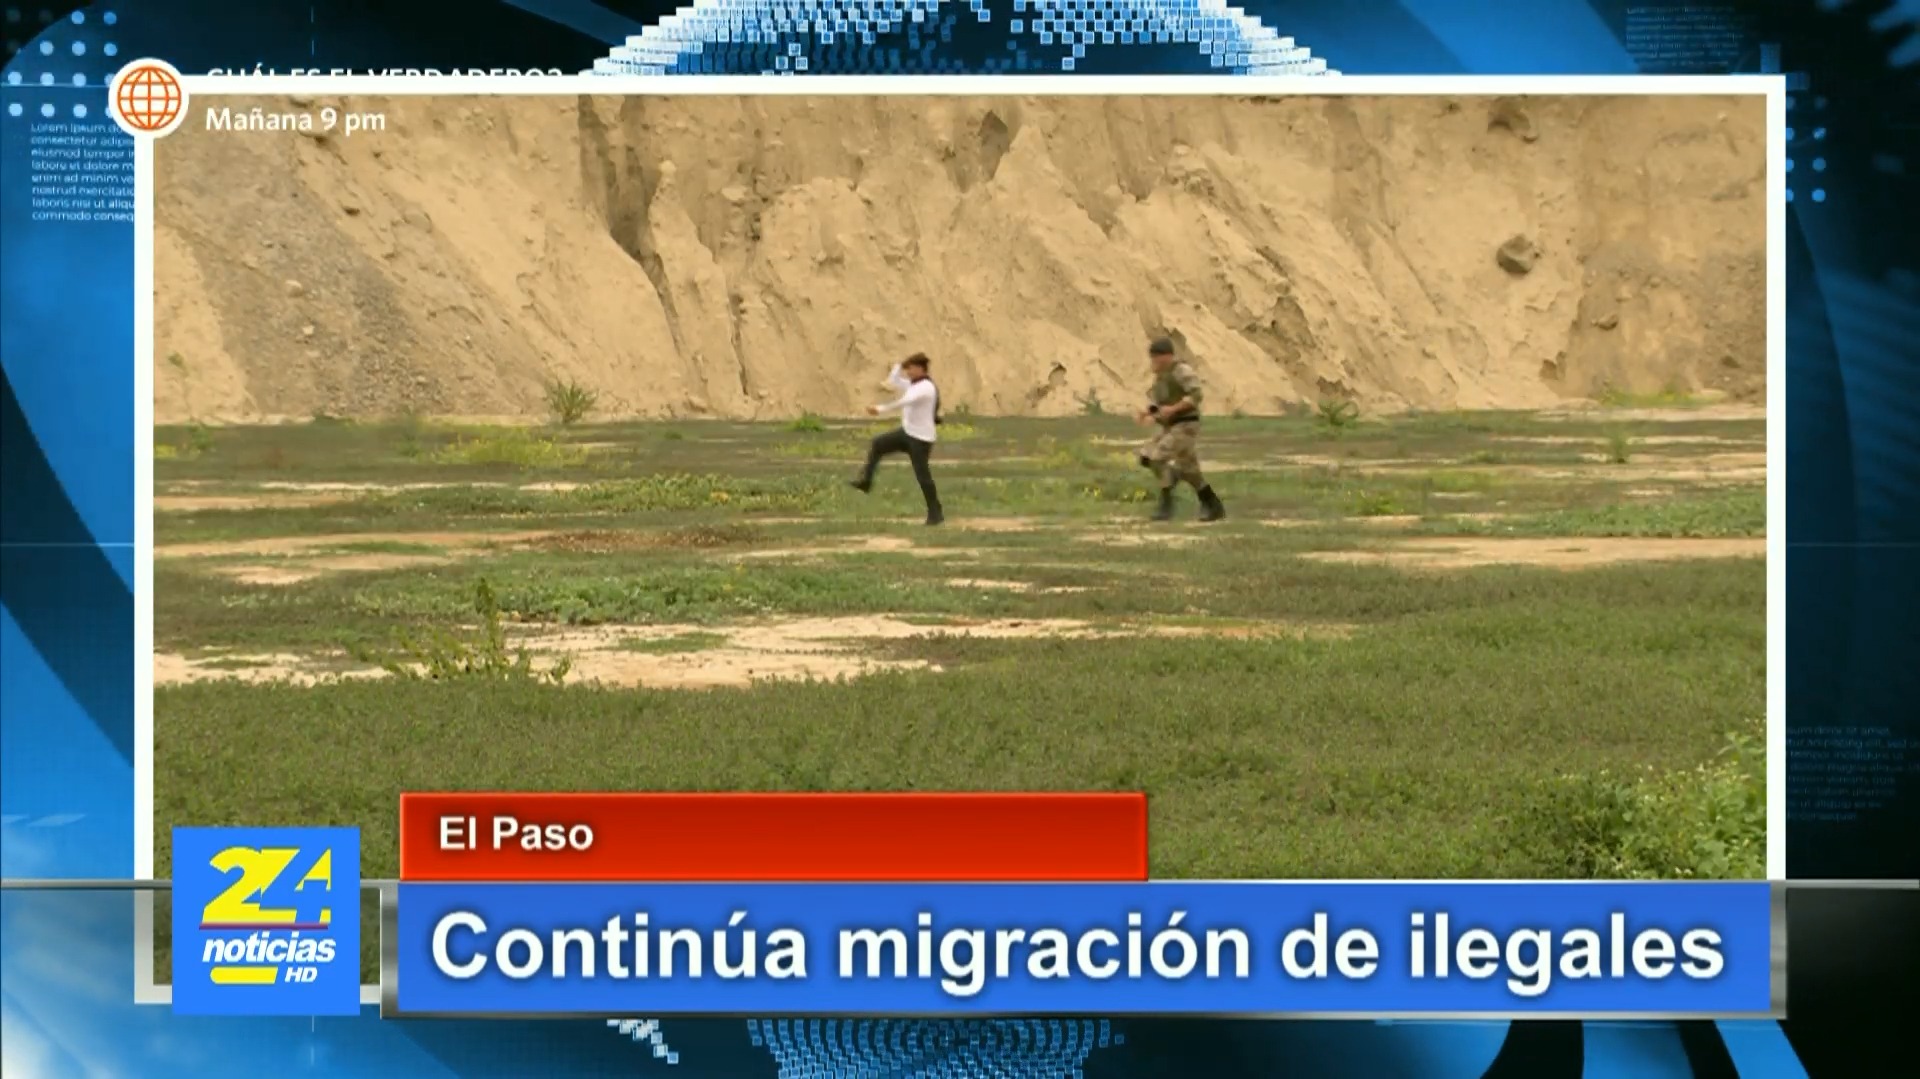 Joel fue protagonista en un reportaje sobre migrantes en la frontera. Fuente: AméricaTV